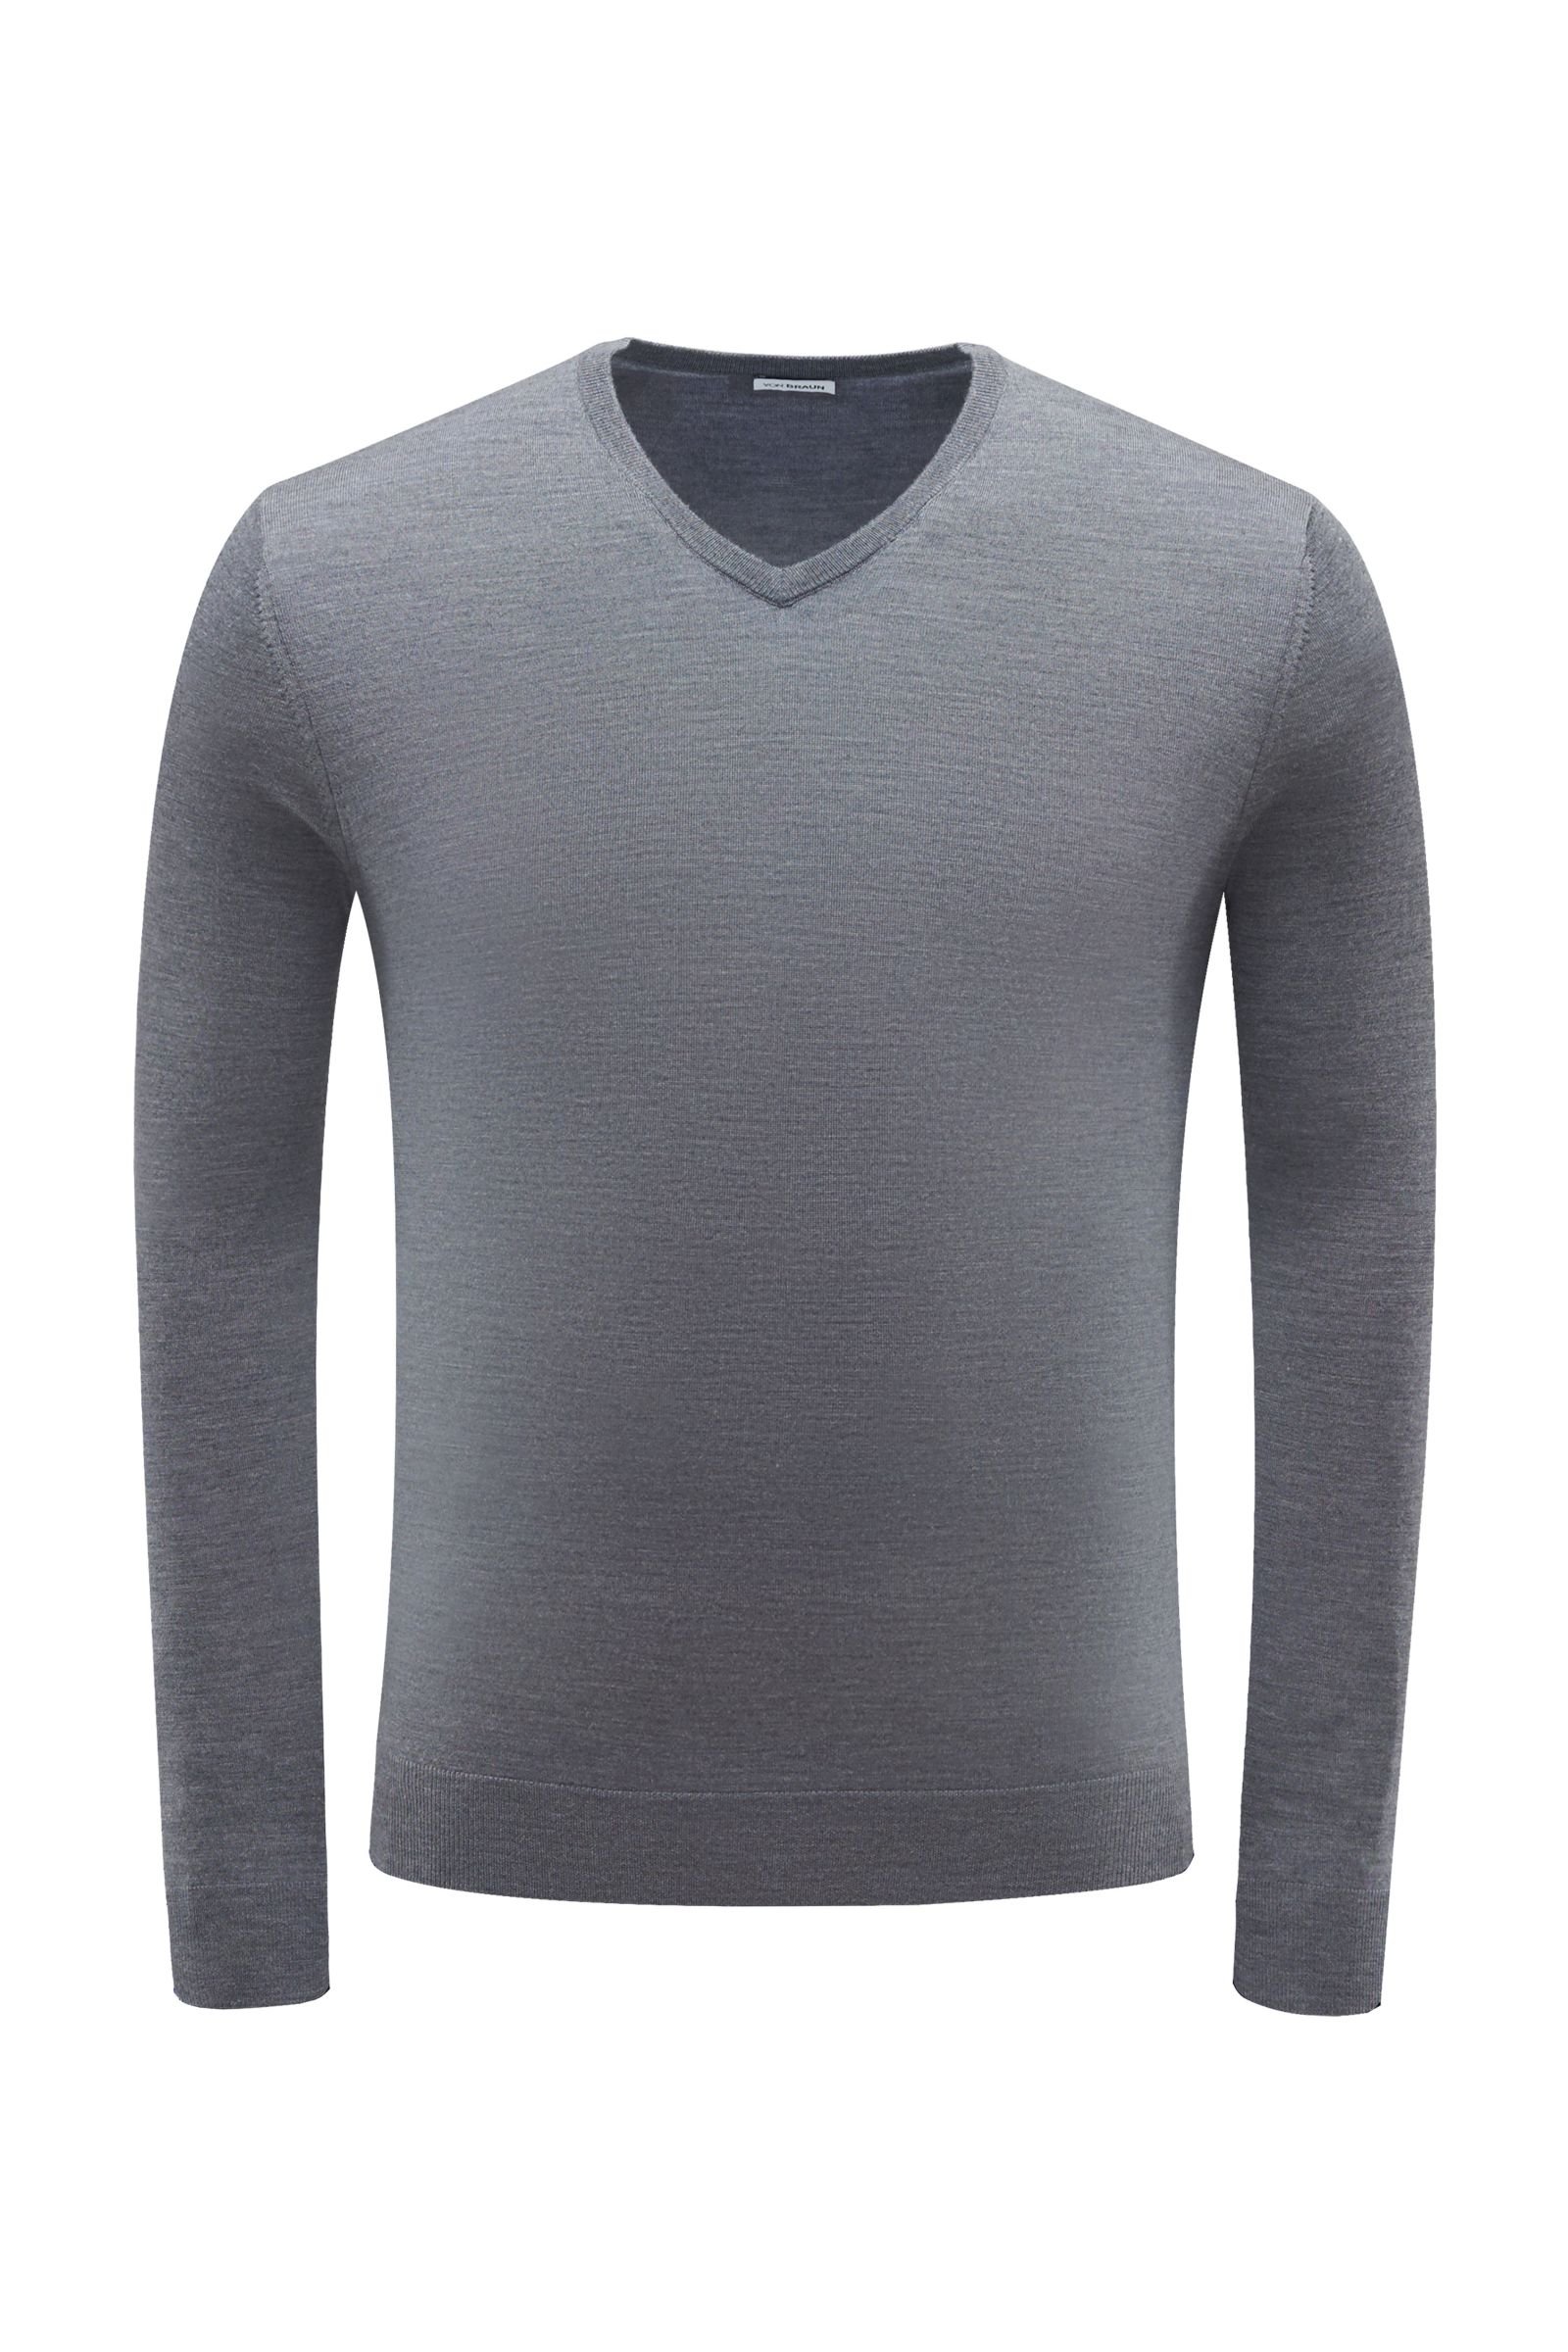 Merino V-neck jumper grey